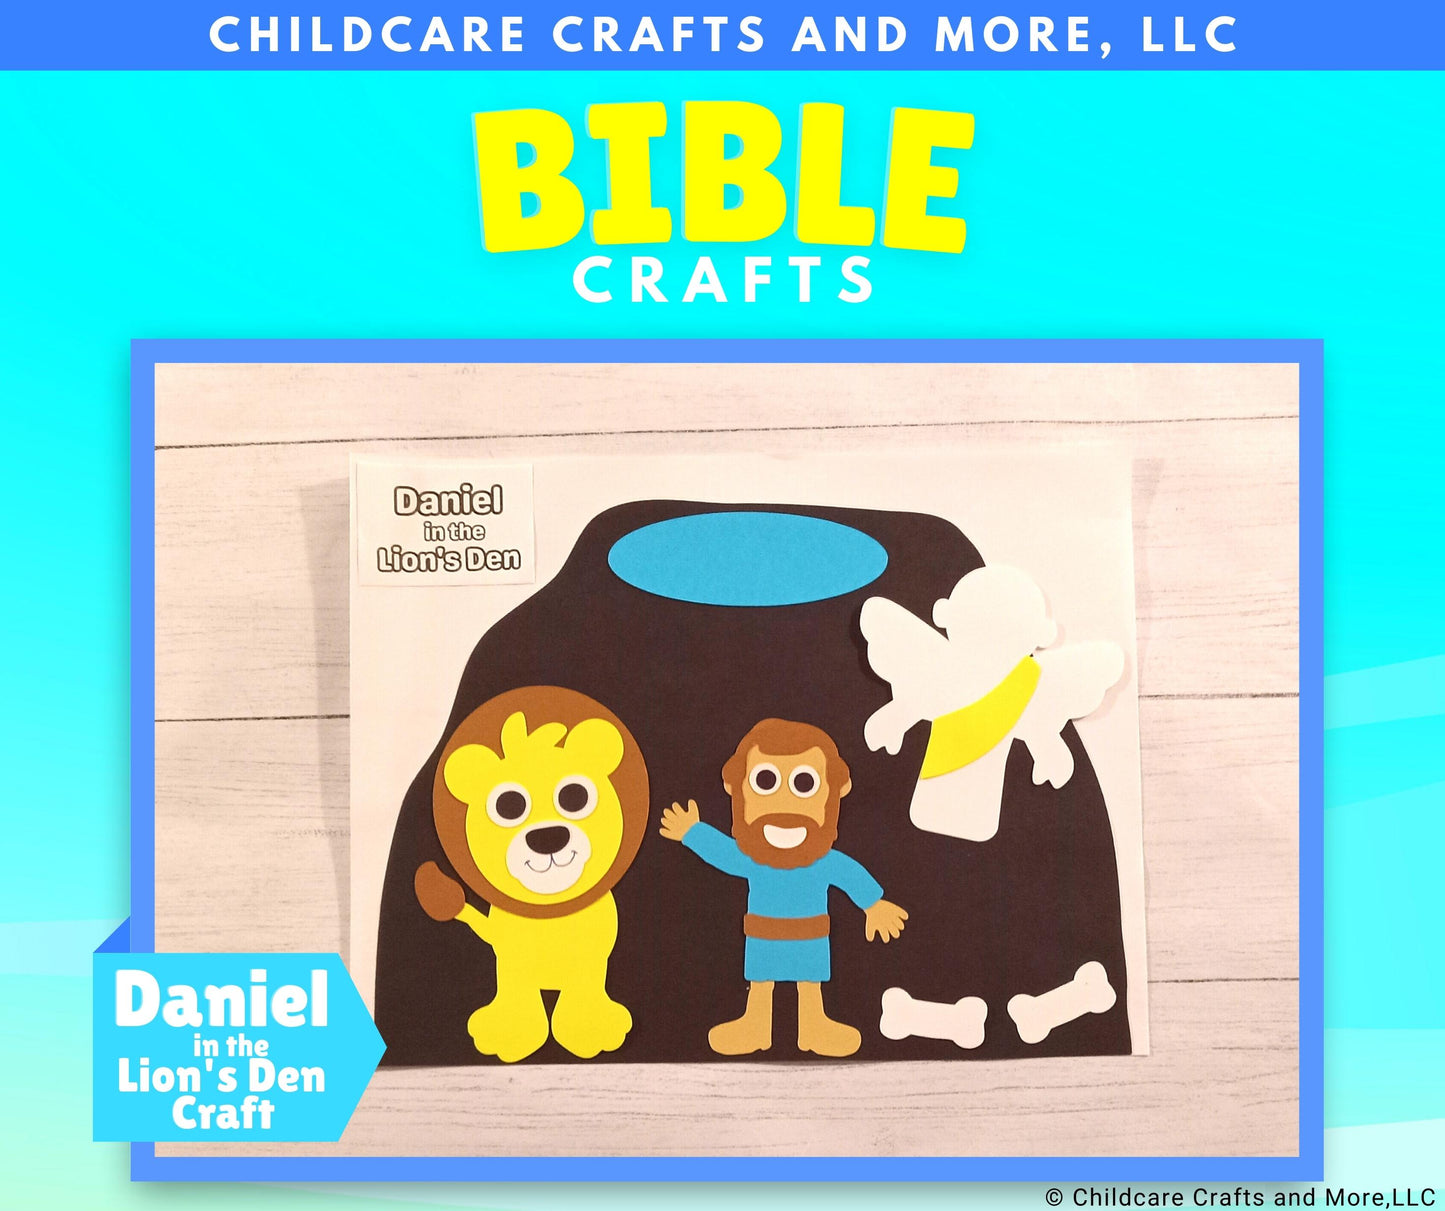 Daniel in the Lion's Den Craft